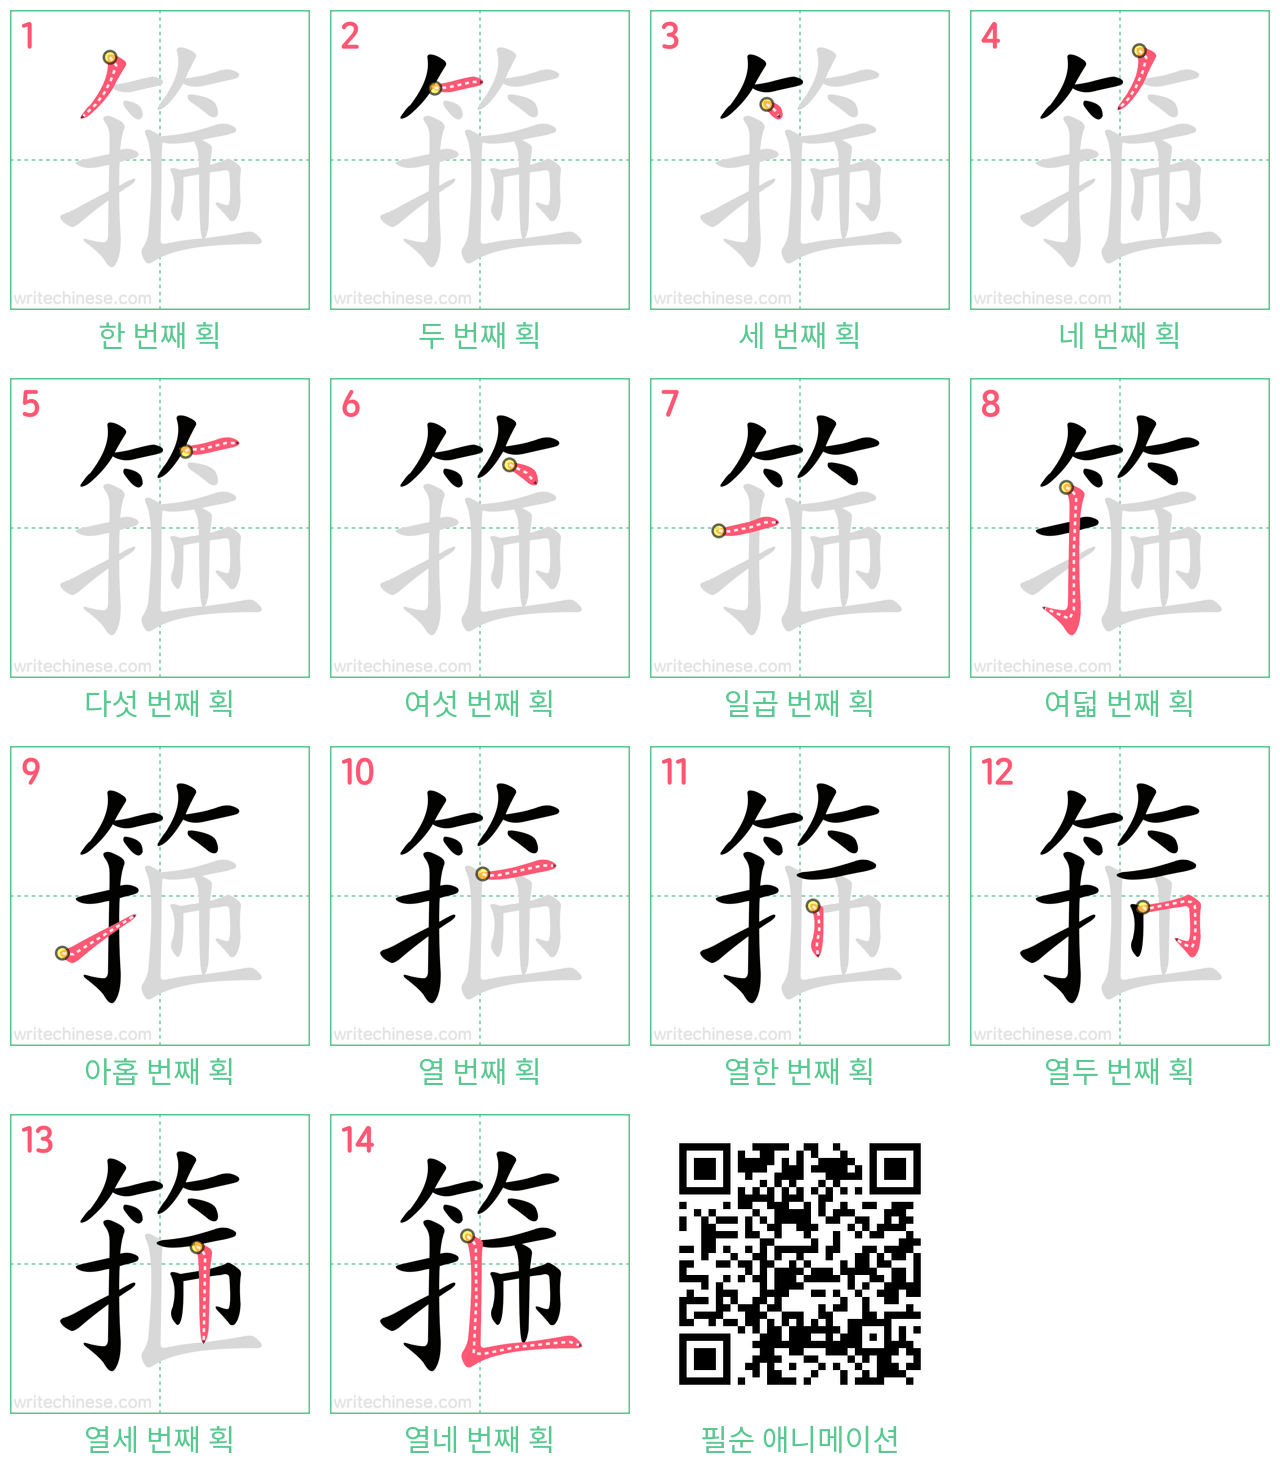 箍 step-by-step stroke order diagrams